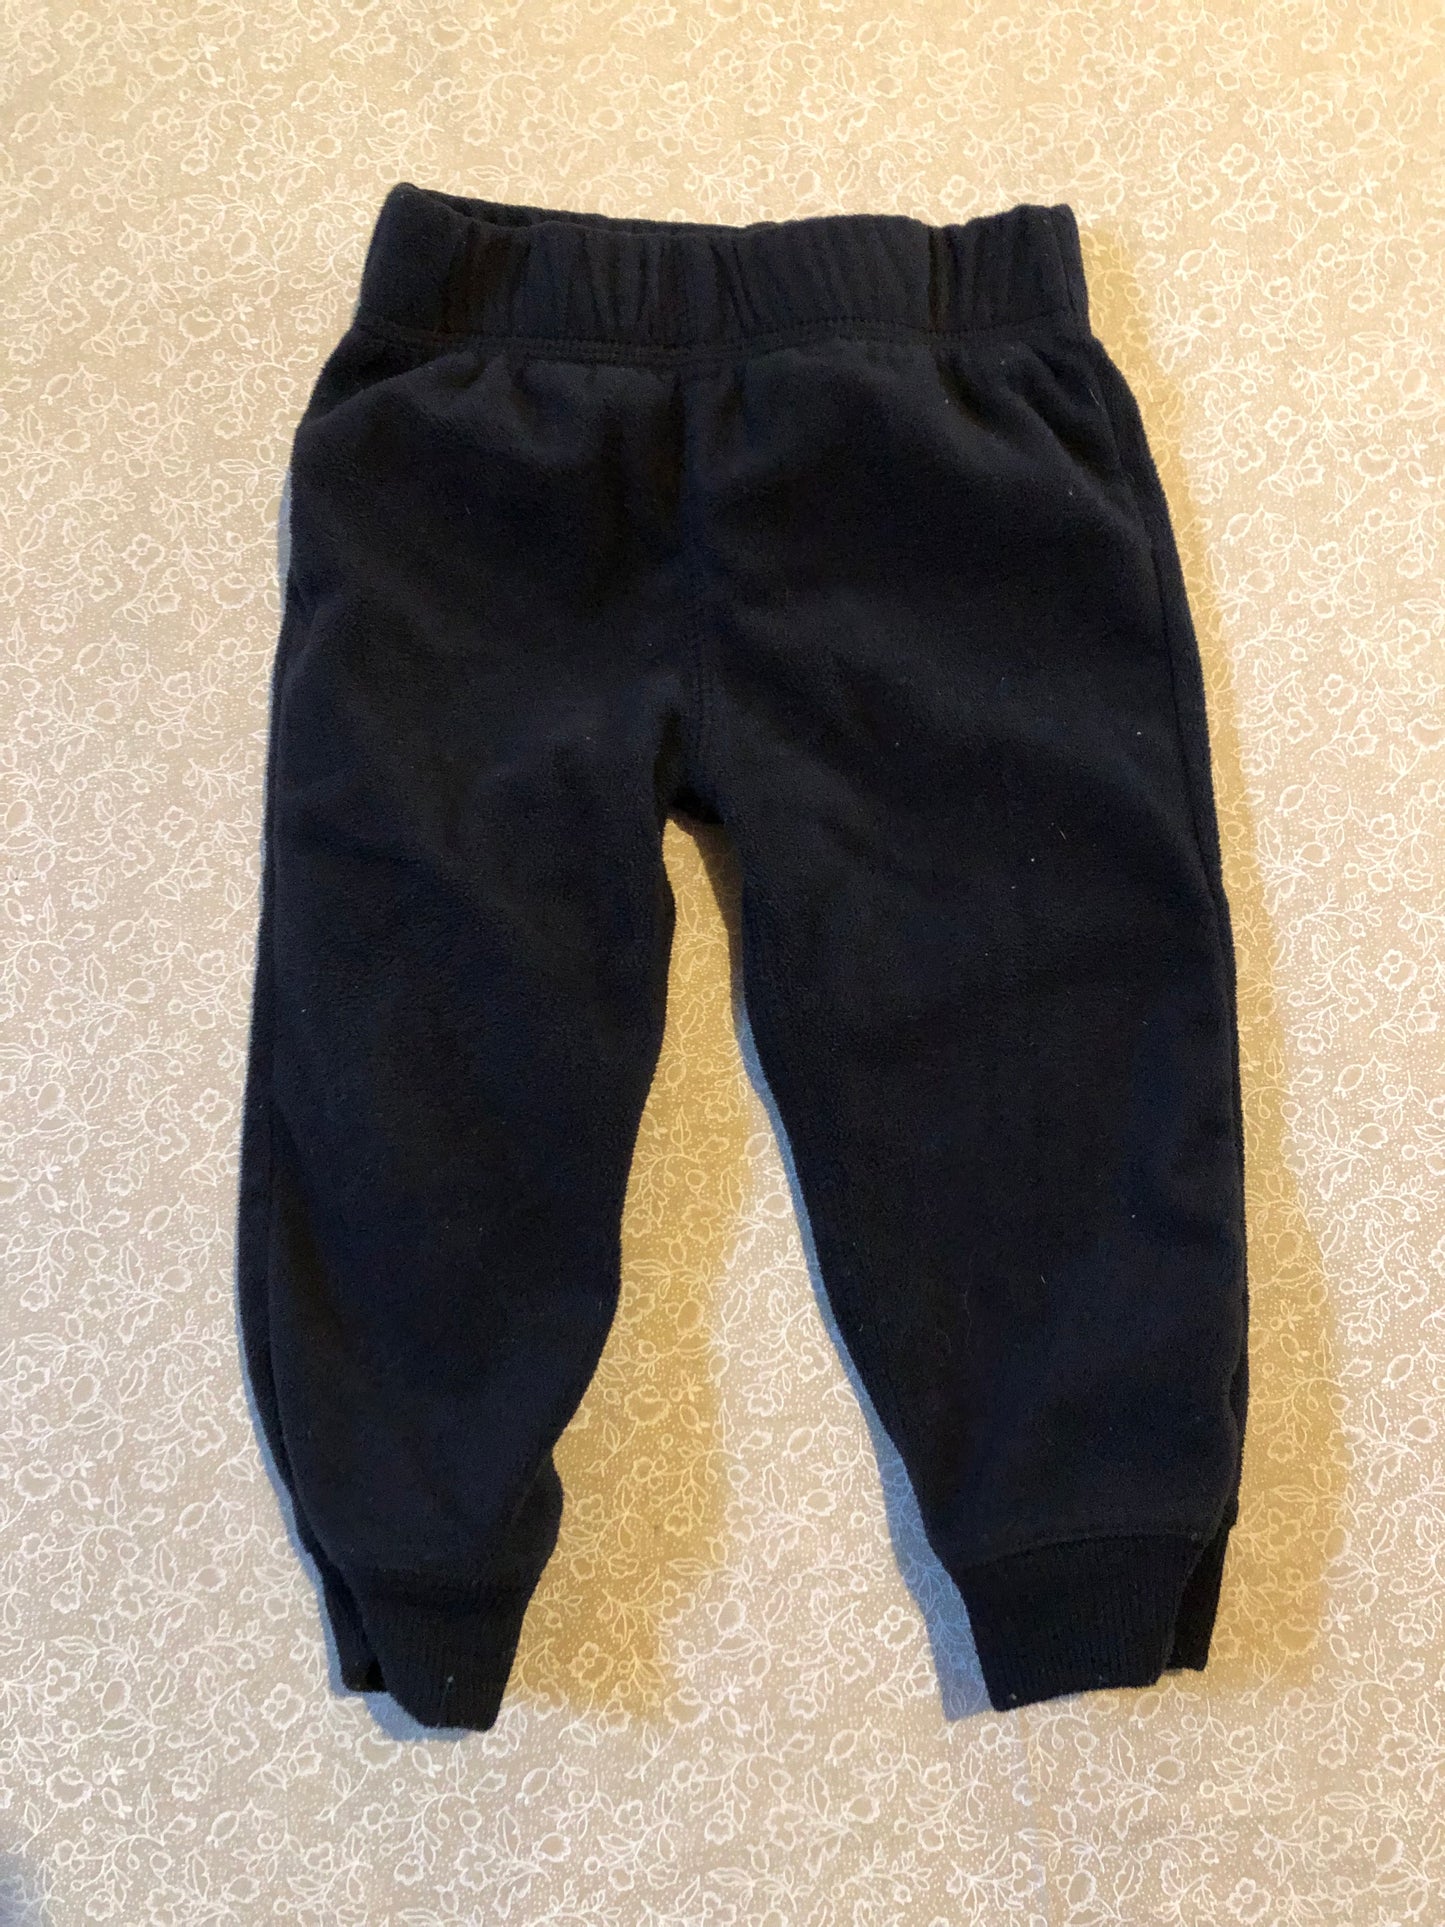 18-months-pants-carters-black-fleece